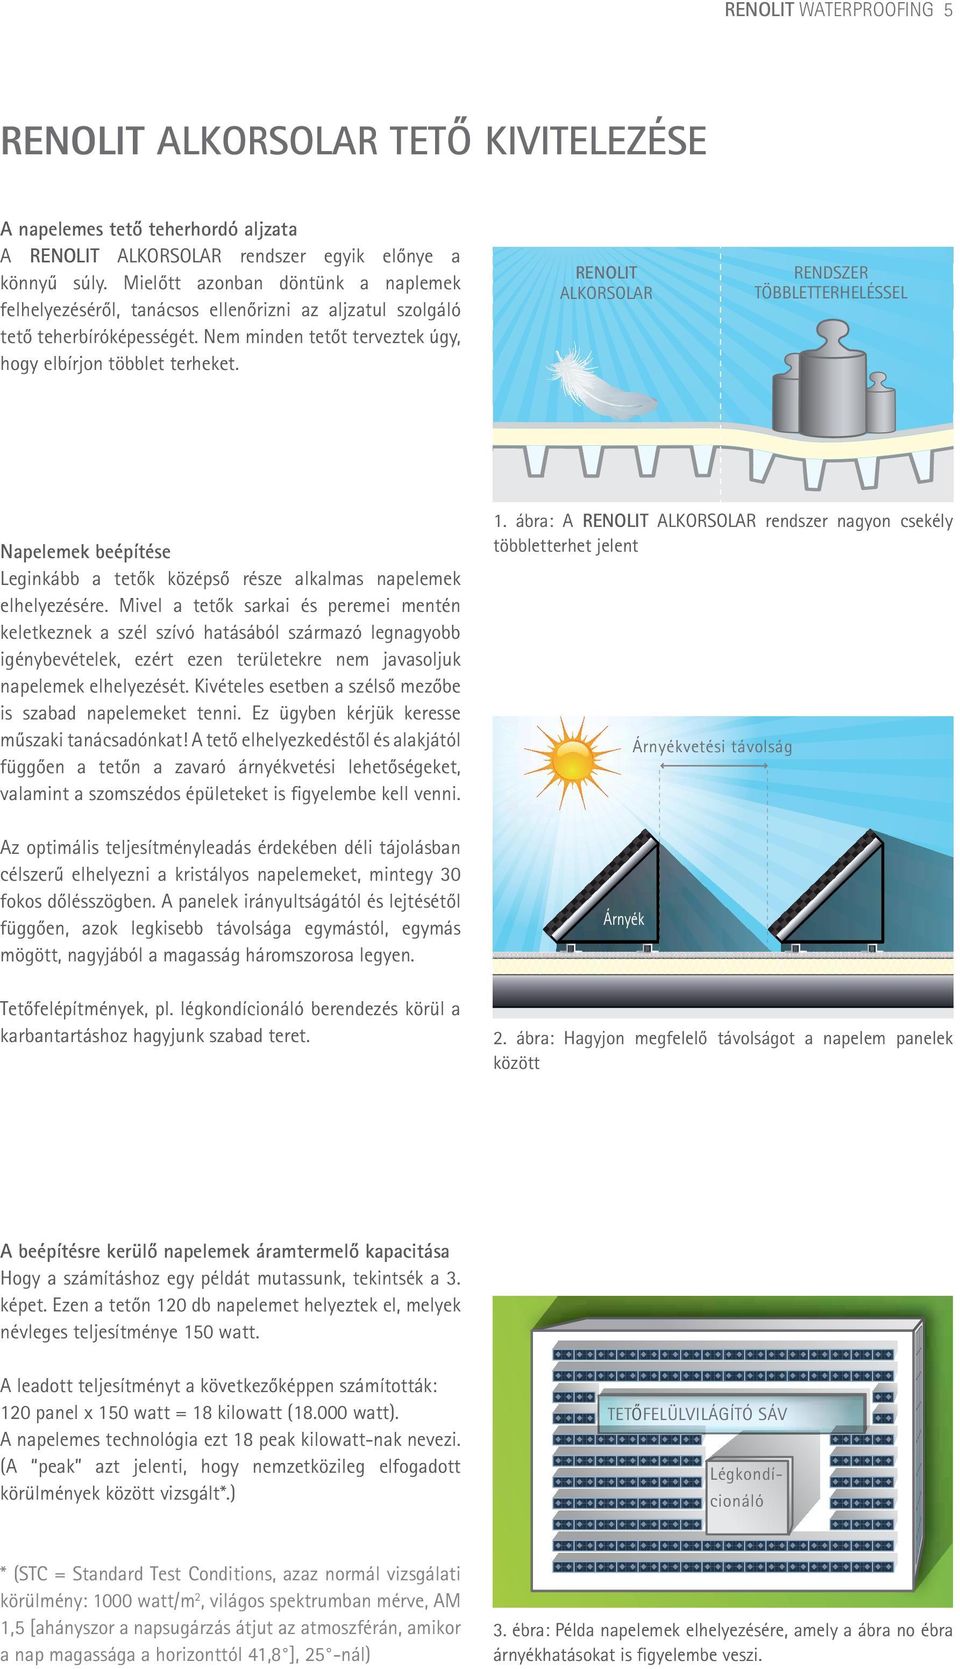 RENOLIT Alkorsolar Rendszer többletterheléssel Napelemek beépítése Leginkább a tetők középső része alkalmas napelemek elhelyezésére.